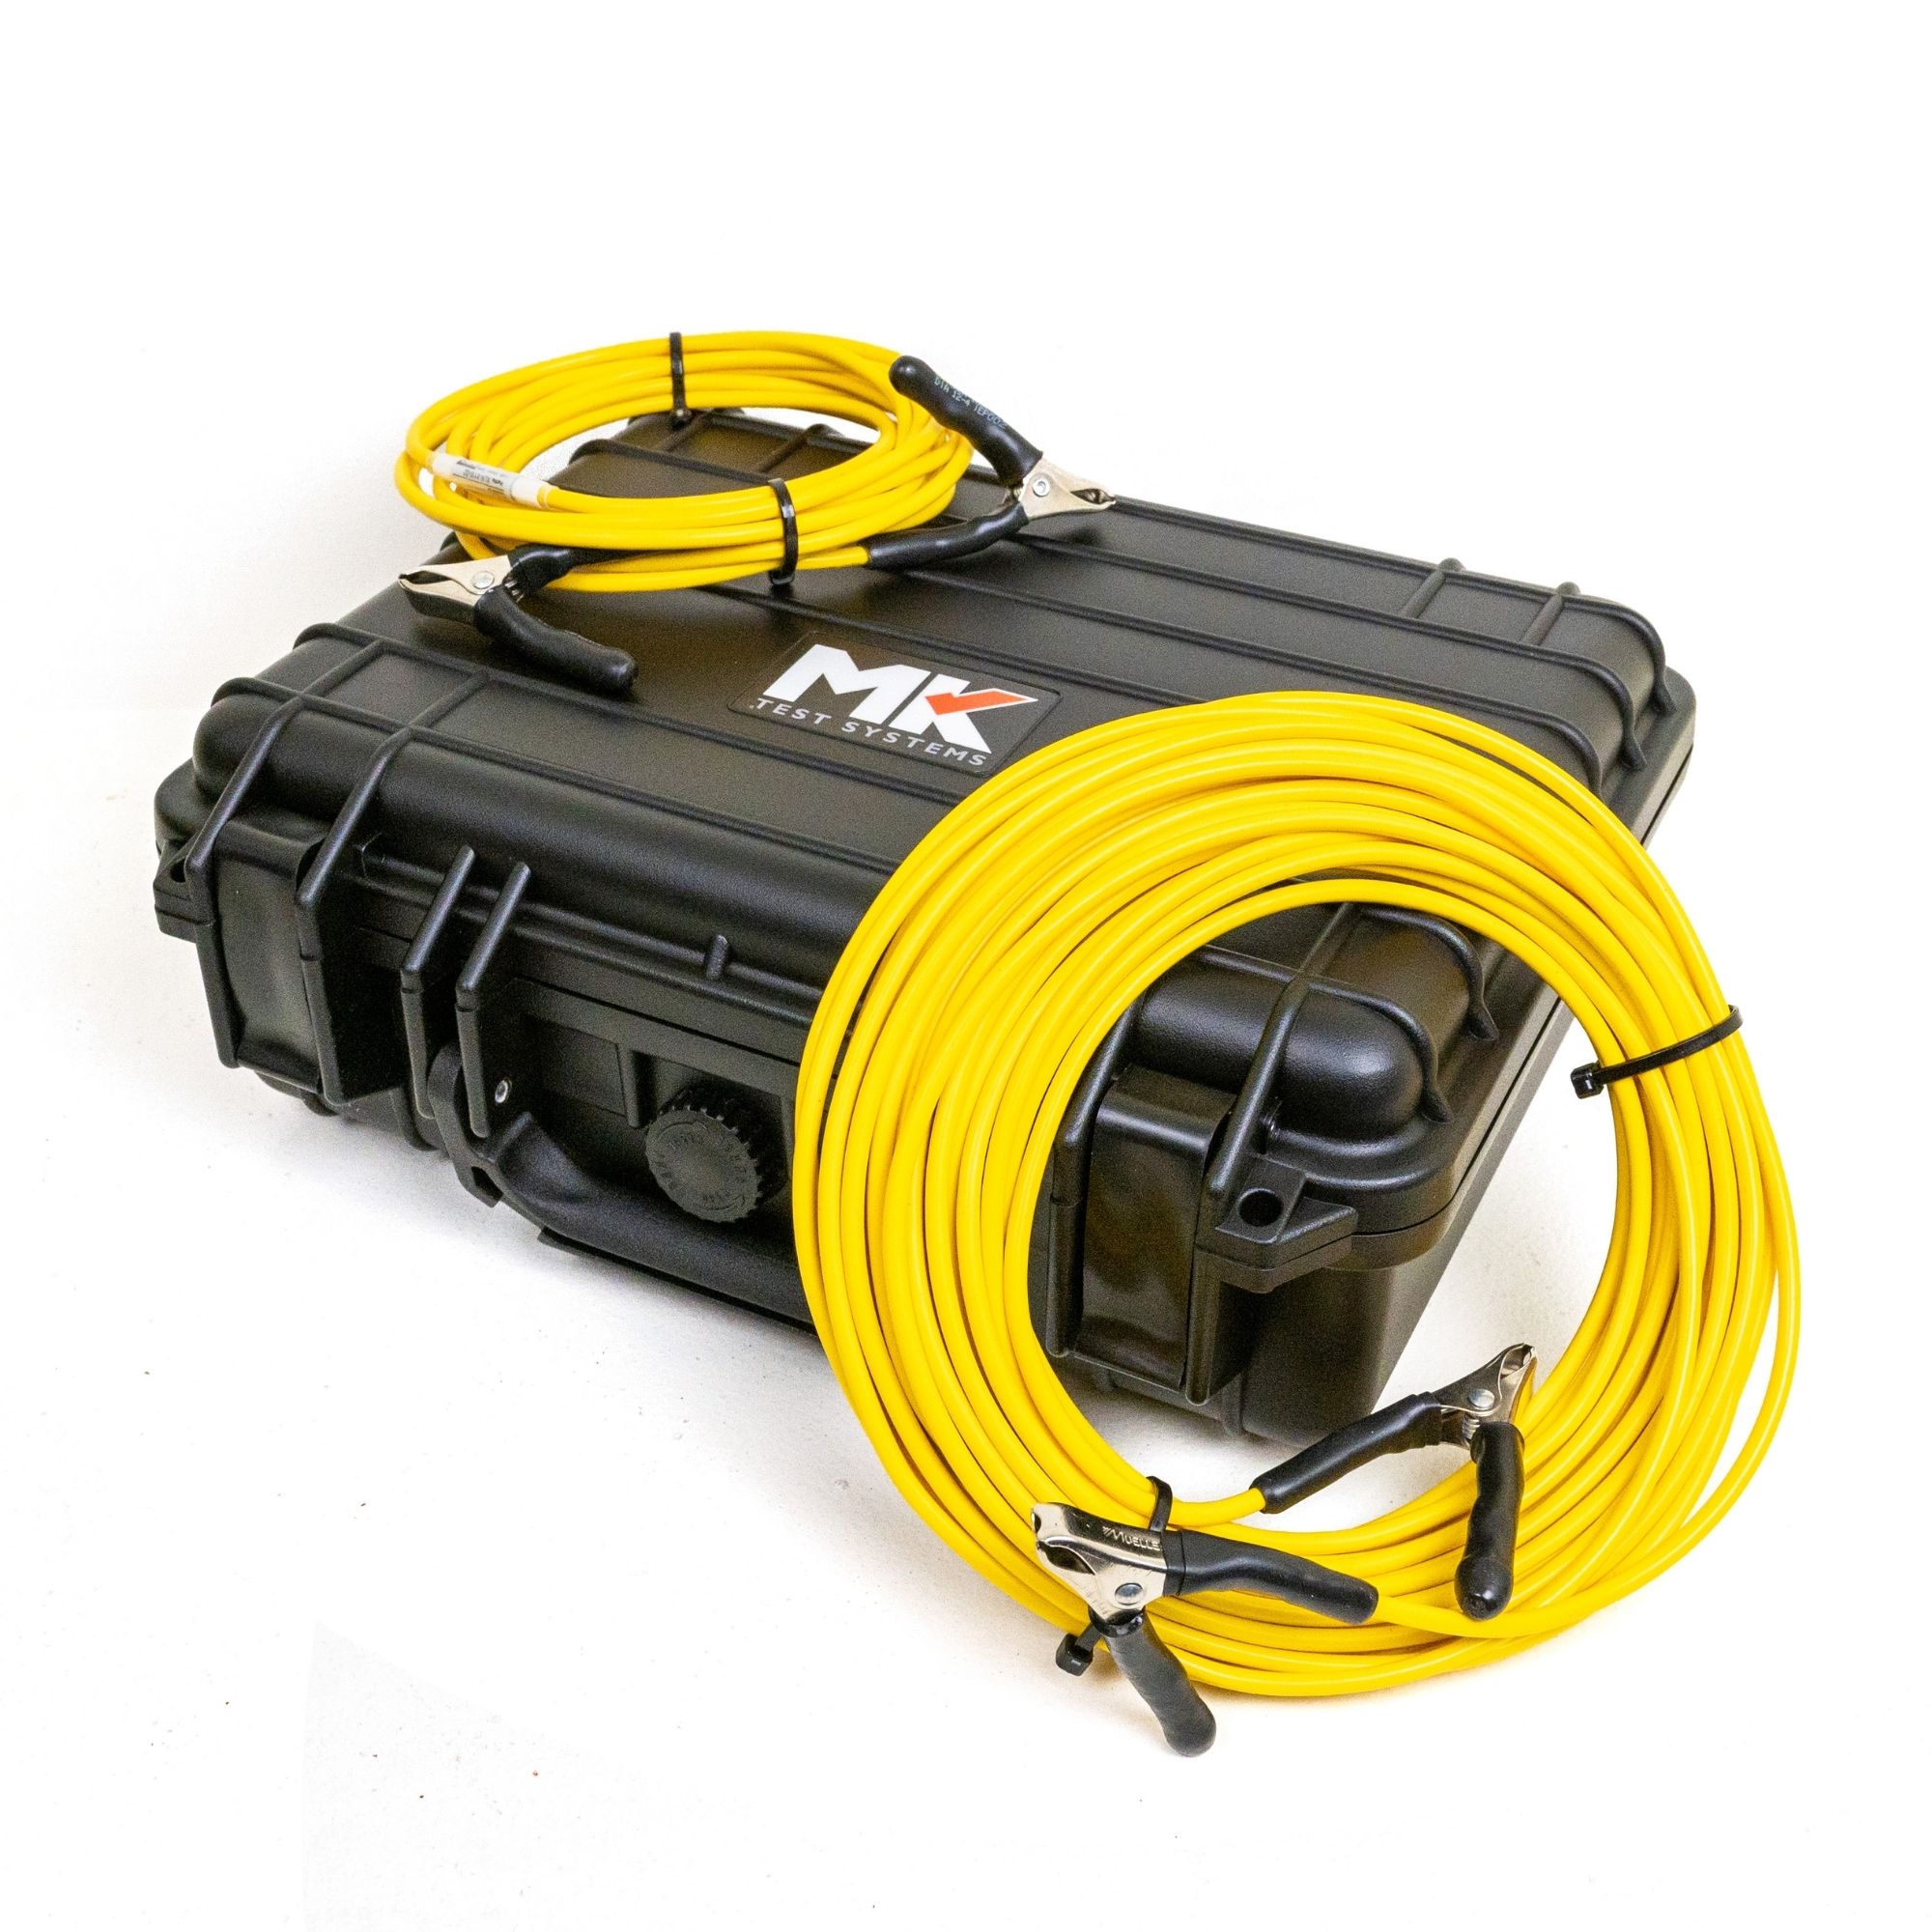 ExLRT loop adjustment jumper cable kit